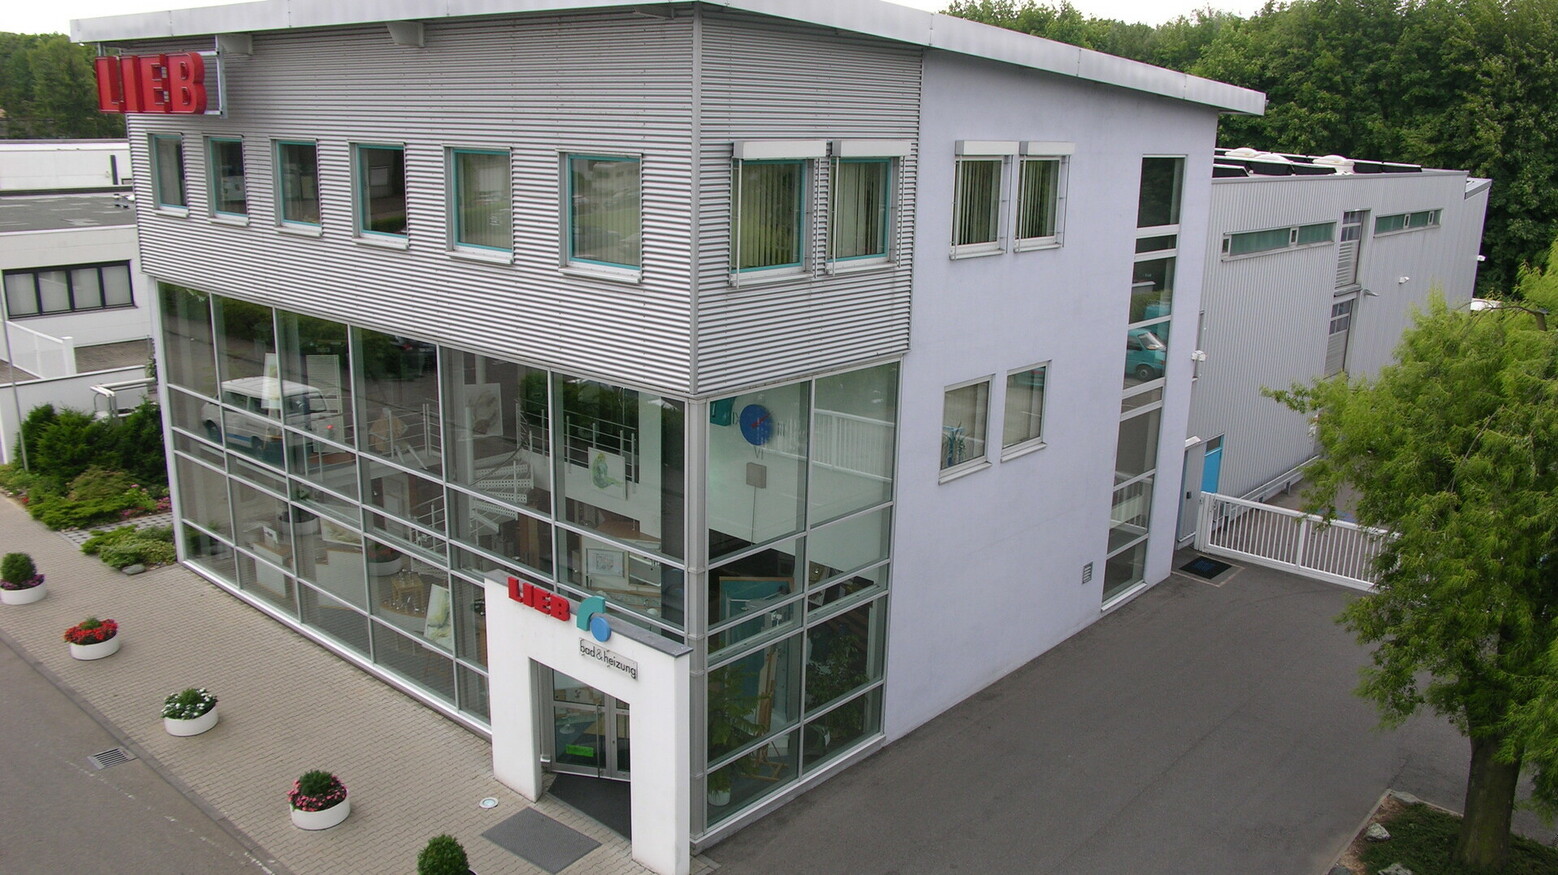 Firmensitz der Lieb GmbH in Neckarsulm.